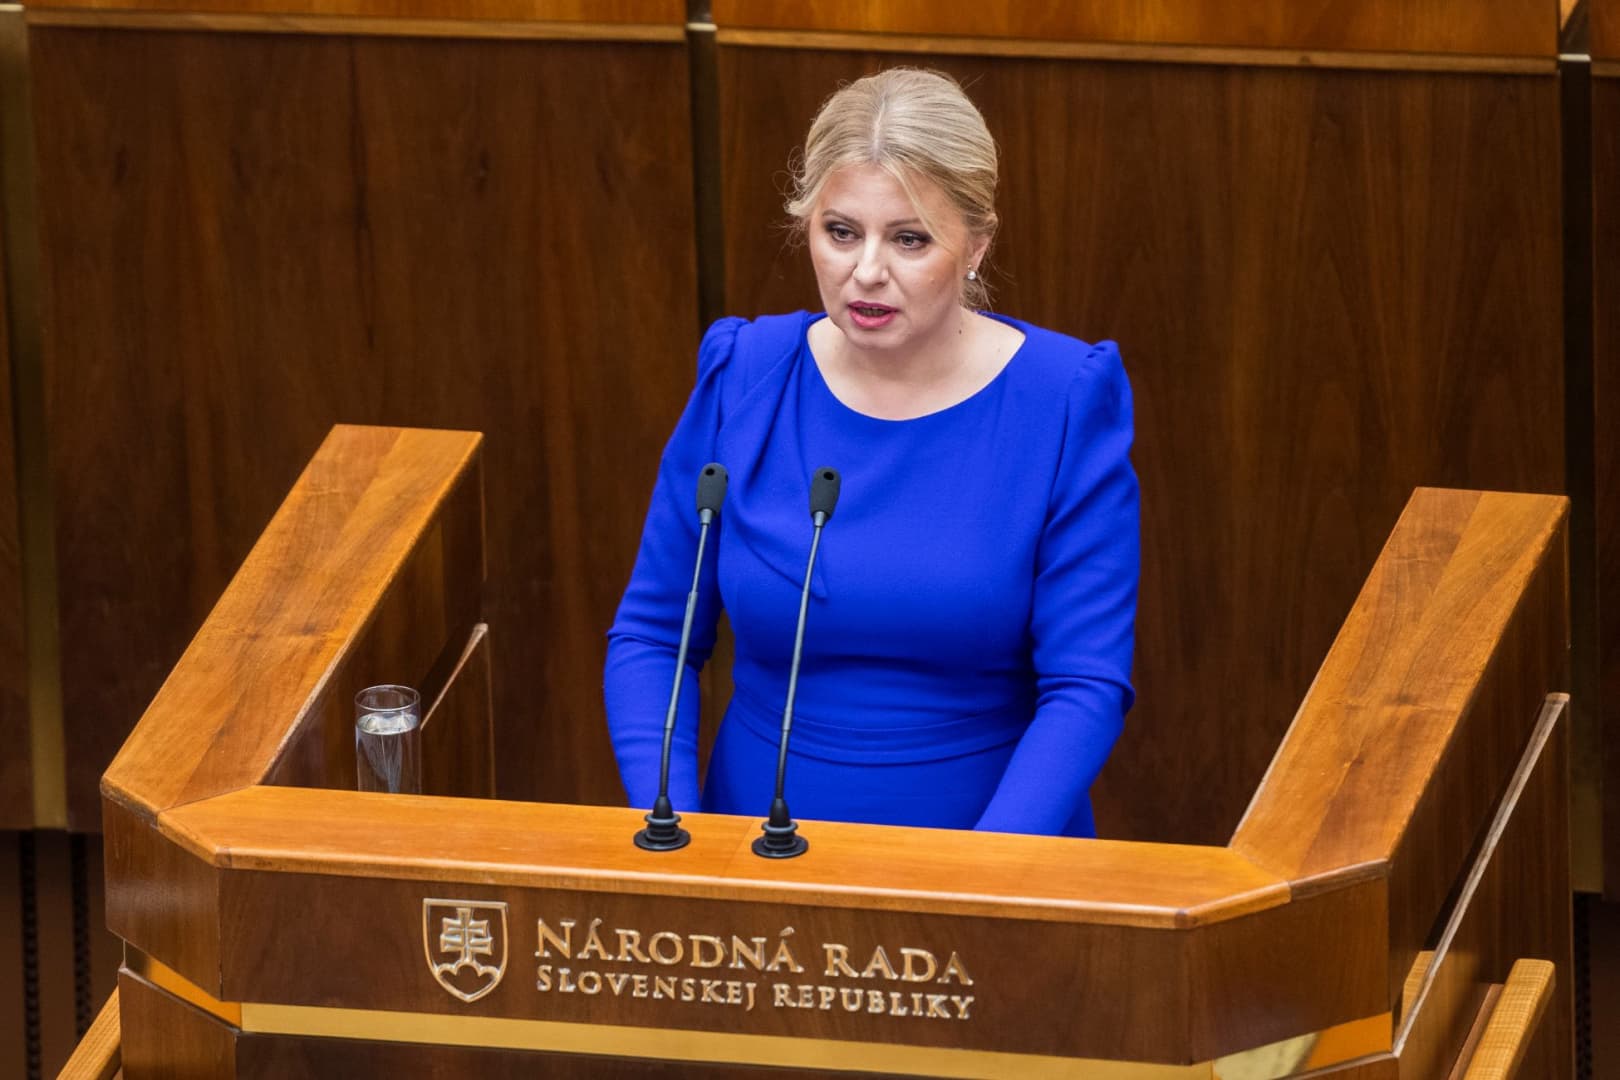 Čaputová mérlegeli, mit tehet, hogy a Büntető Törvénykönyv módosítása ne lépjen hatályba